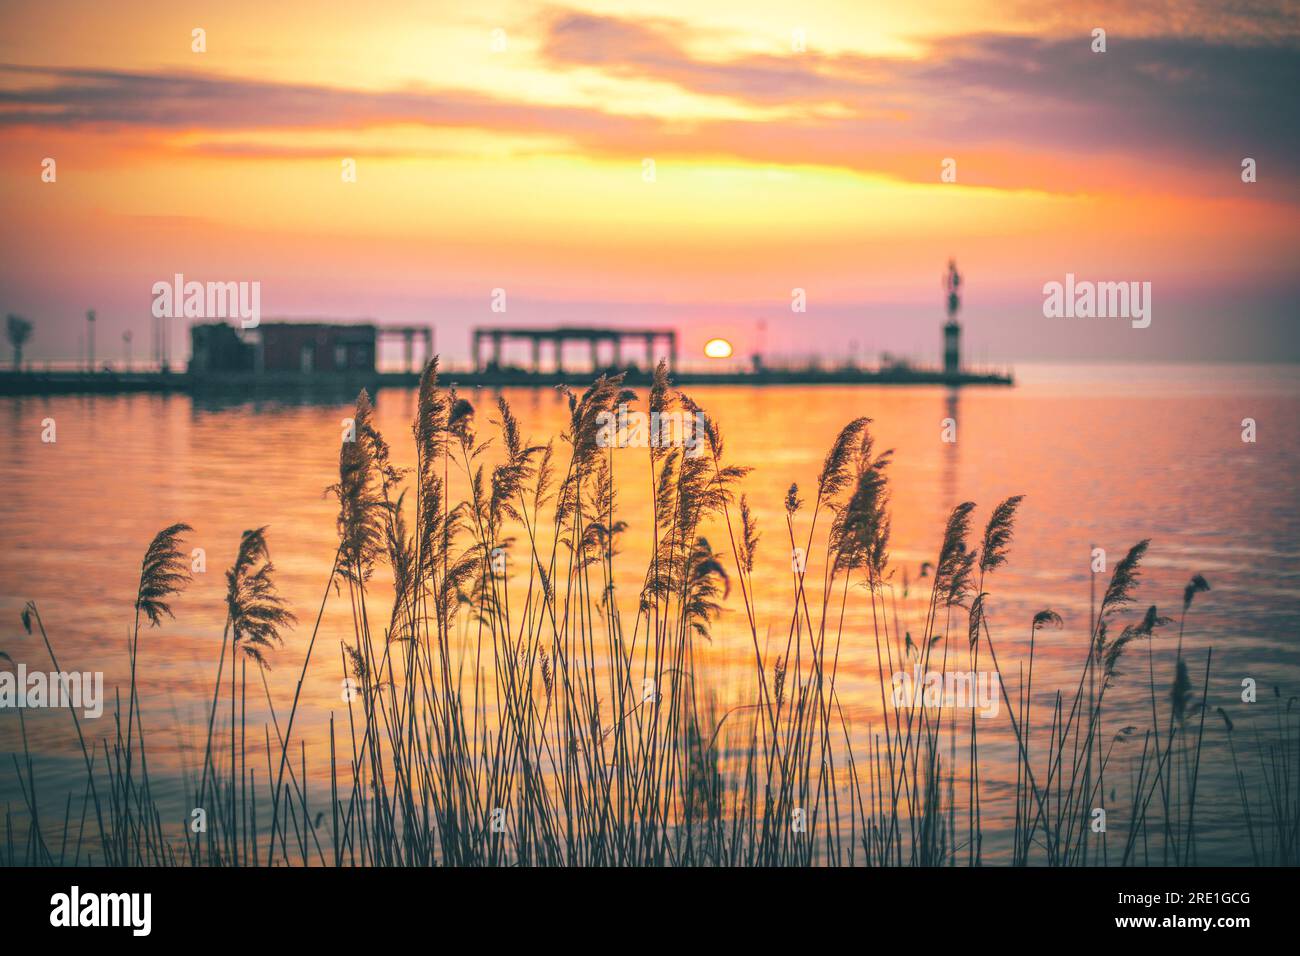 Balaton Siofok Hungary. Beautiful sunset at Lake Balaton, with reflection in the water Stock Photo